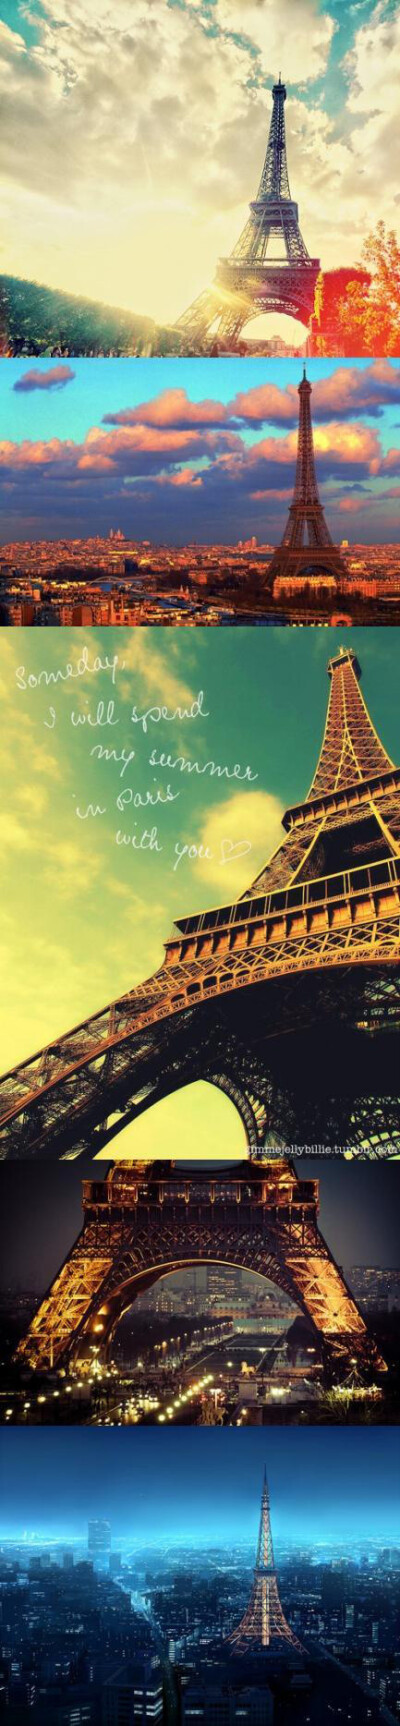 有埃菲尔的的巴黎连空气都是浪漫的